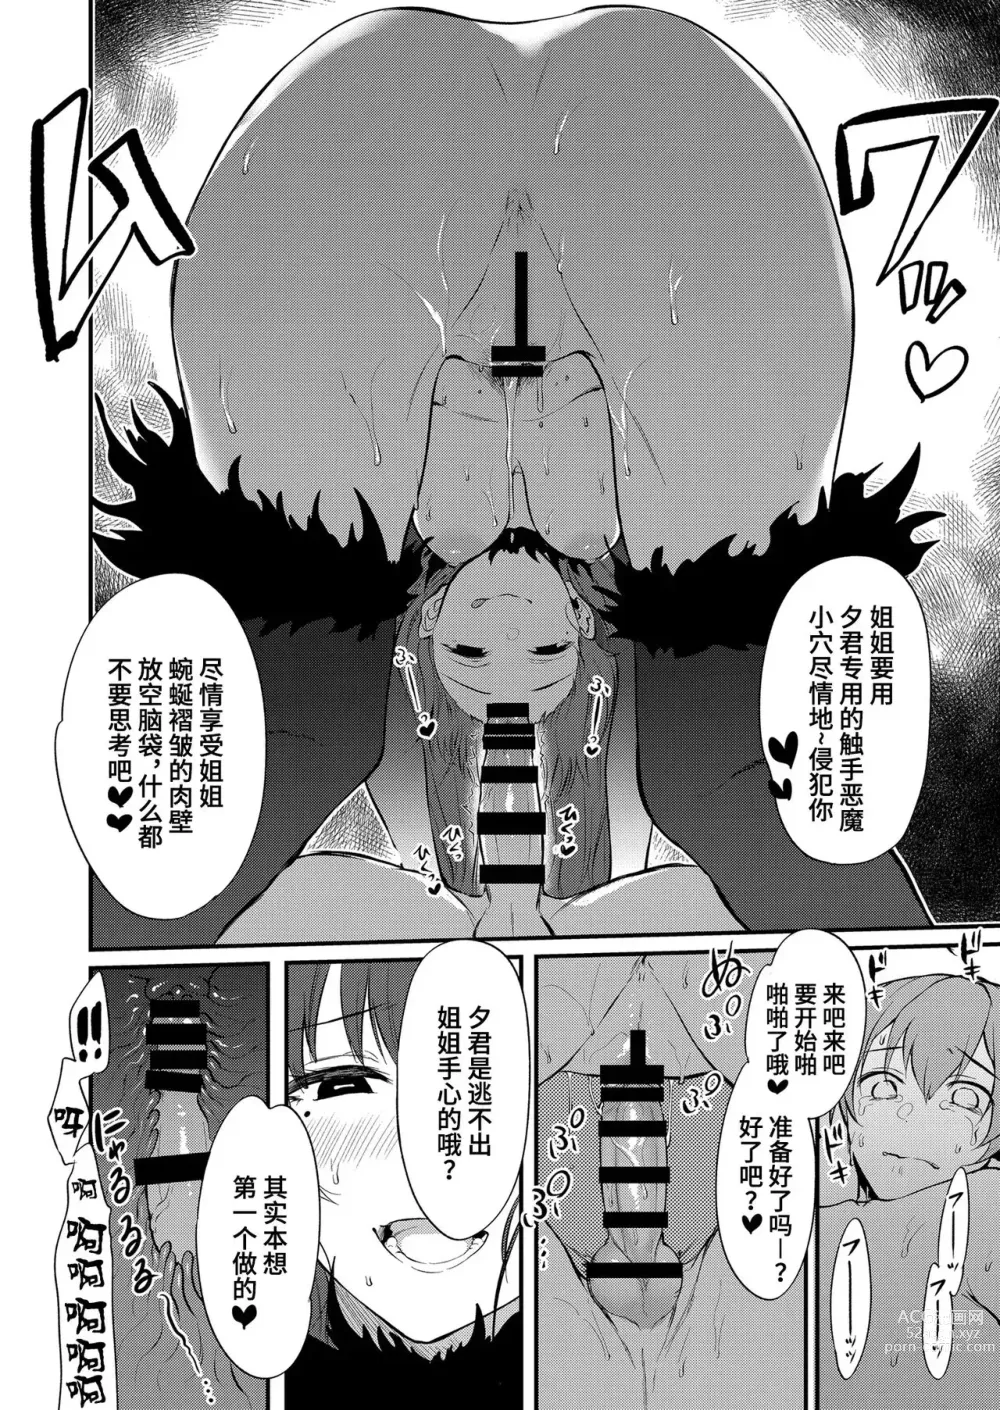 Page 344 of doujinshi Ane Naru Mono 1-11